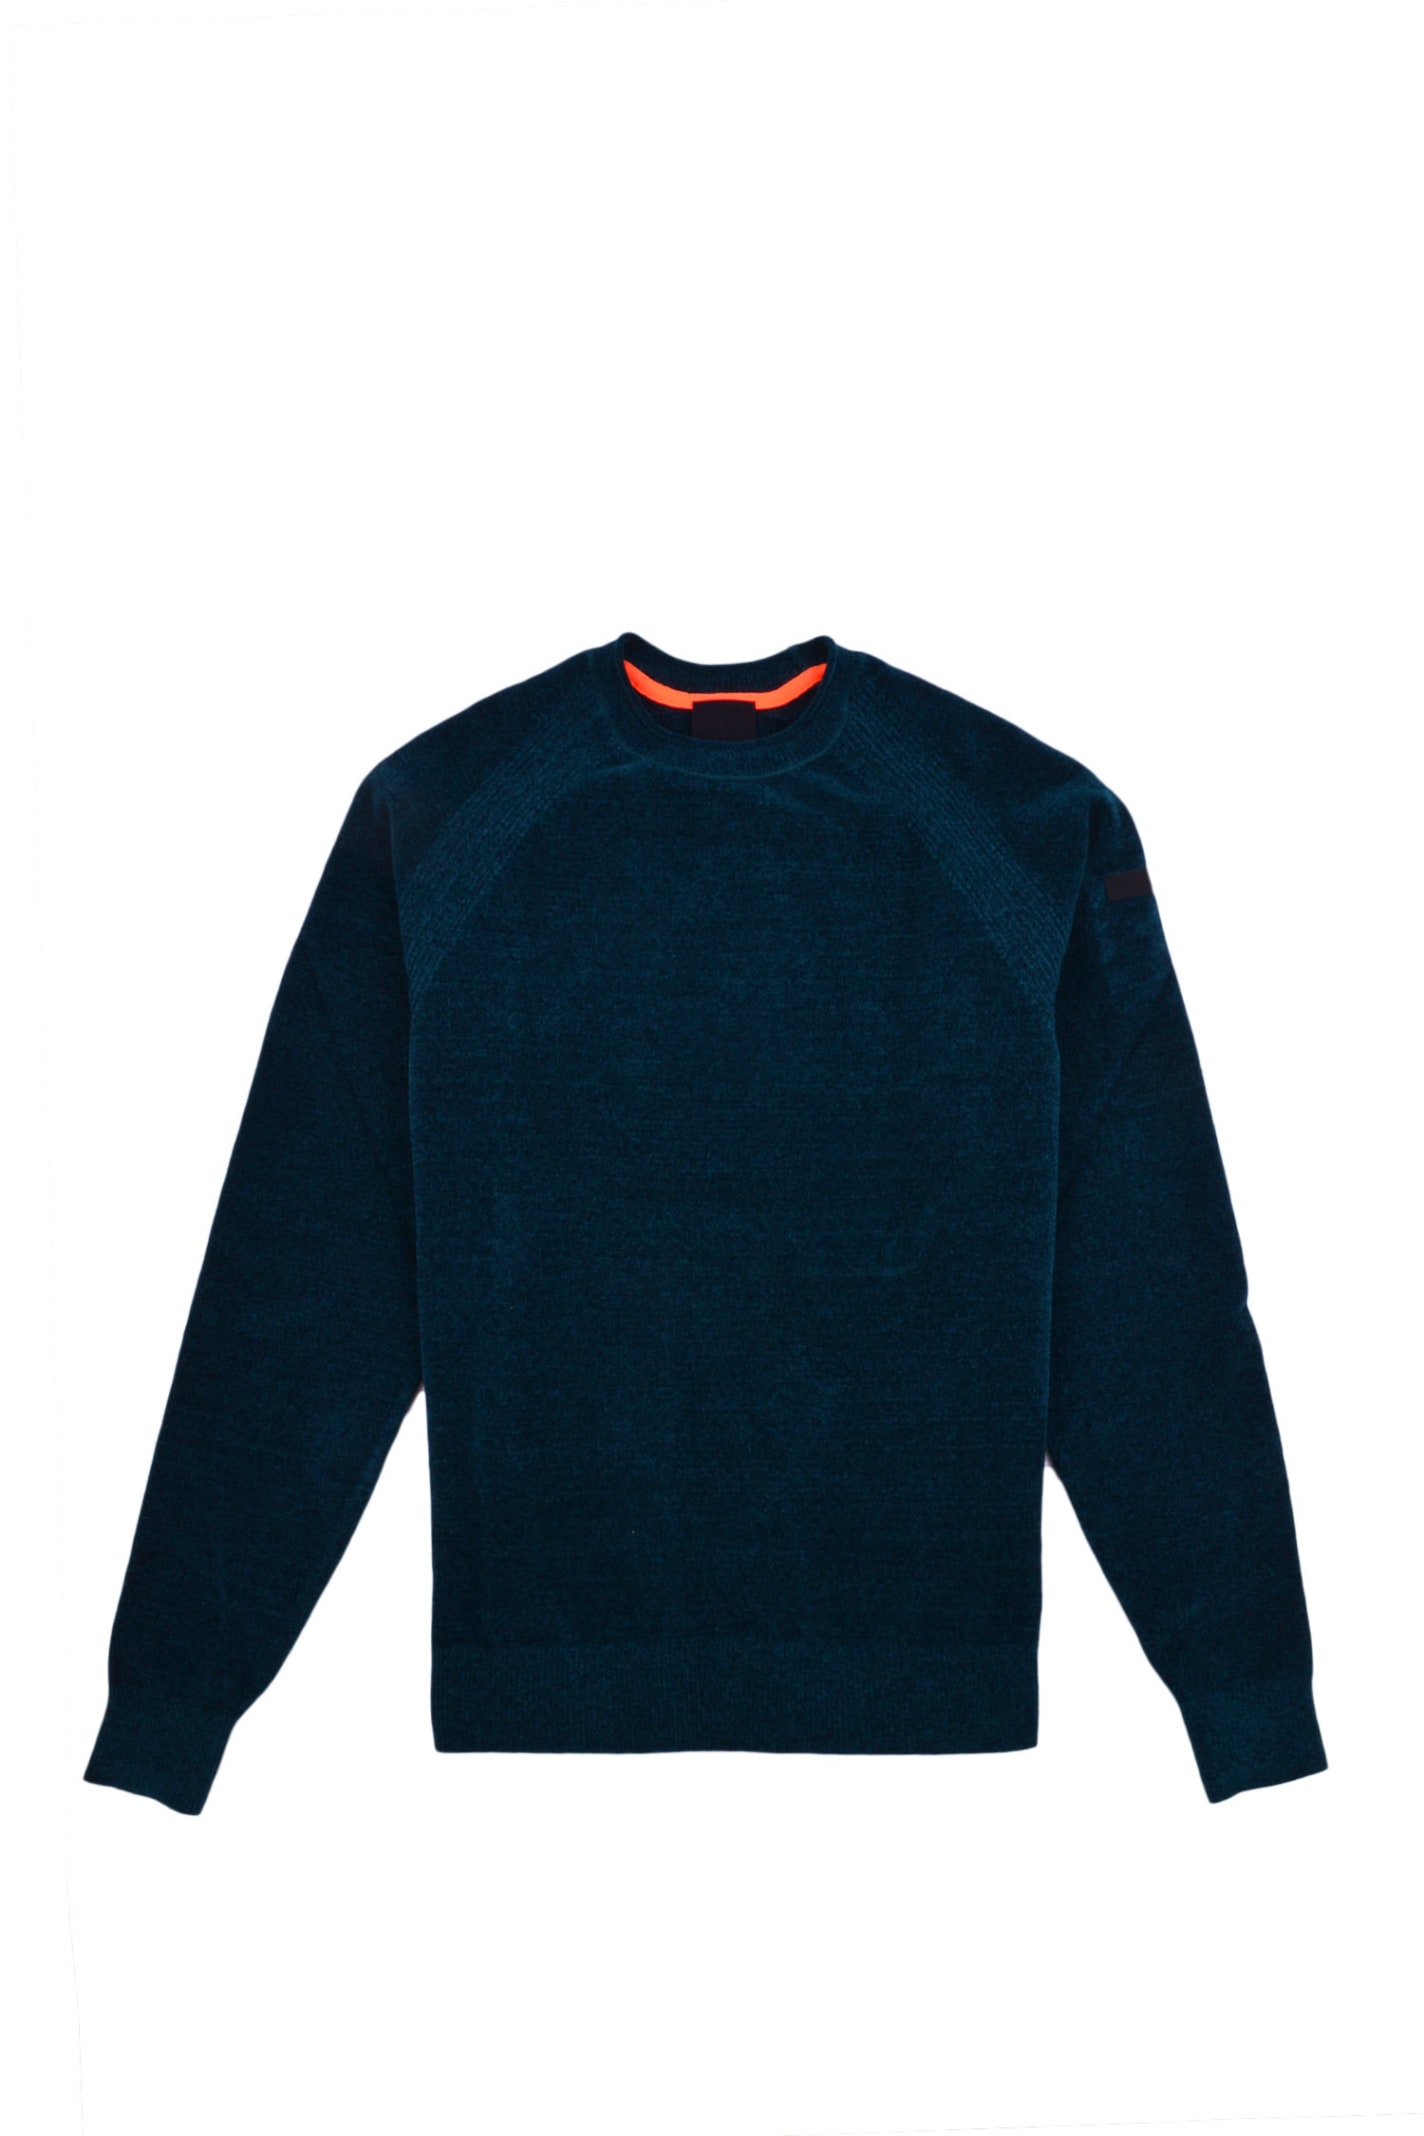 RRD - Roberto Ricci Design Velvet Effect Sweater